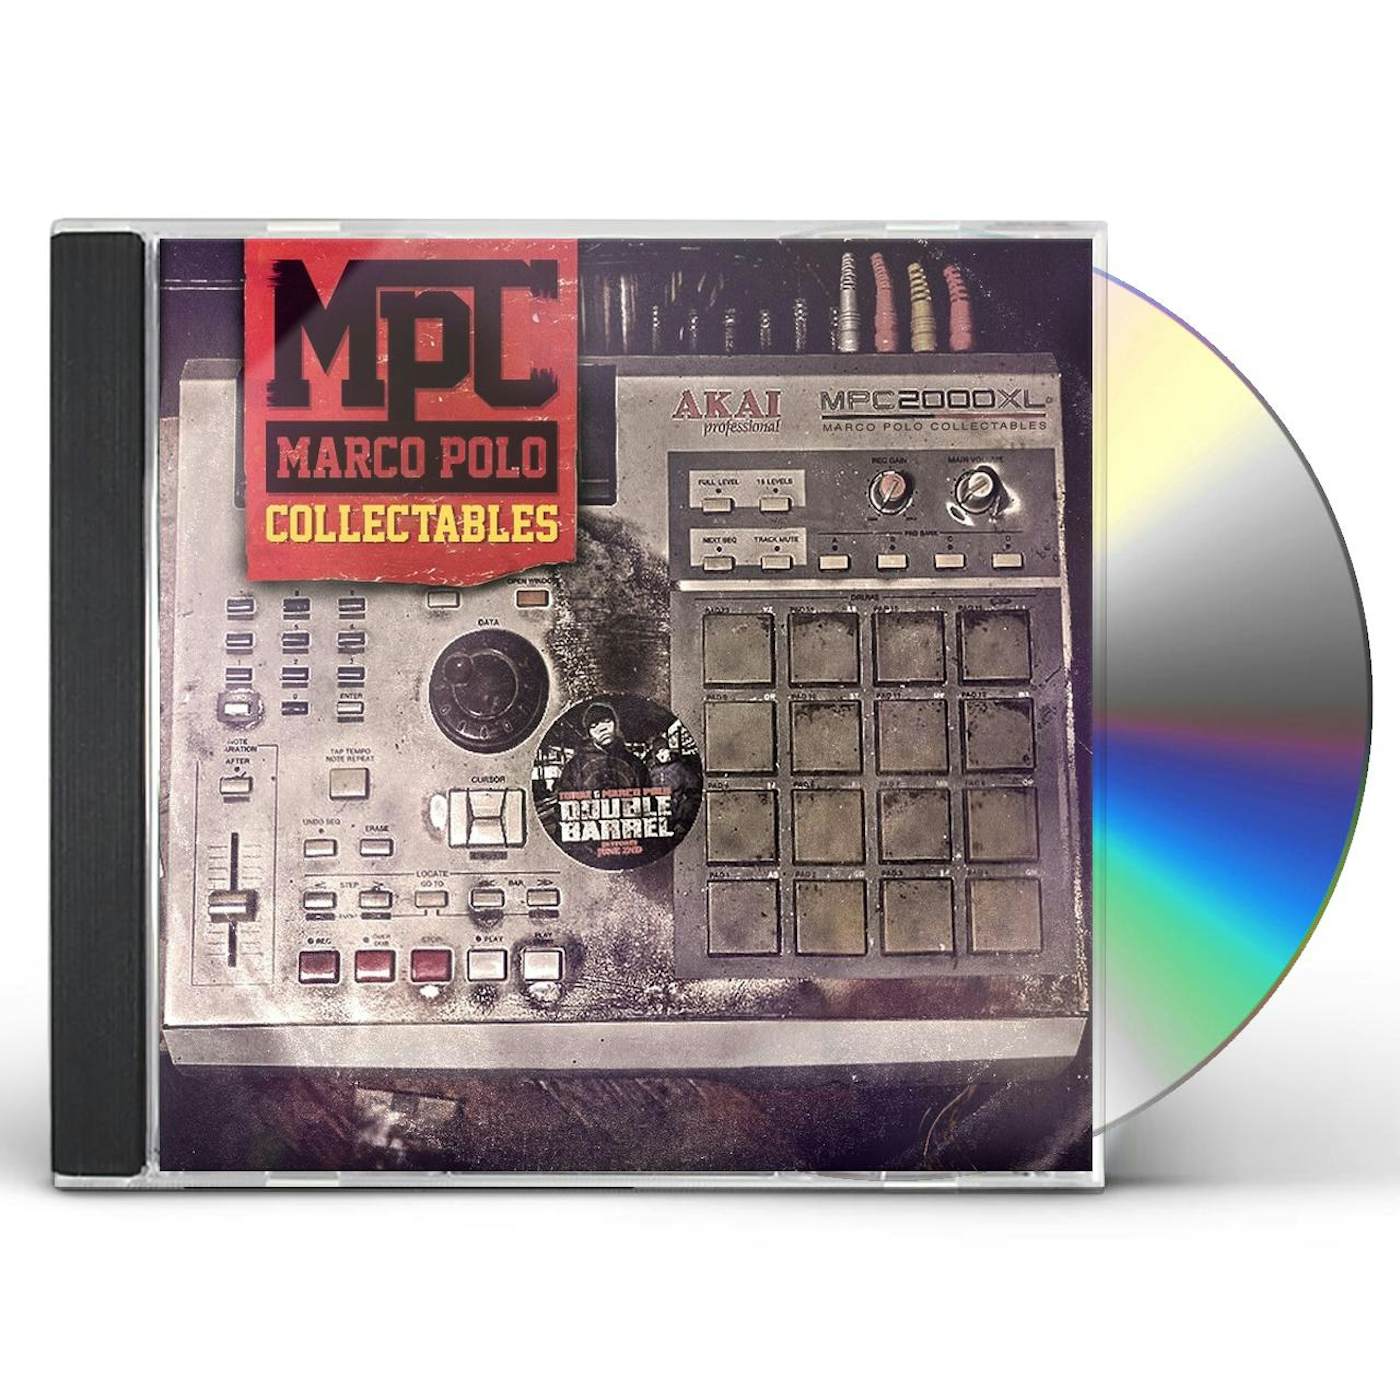 MPC: MARCO POLO COLLECTABLES CD